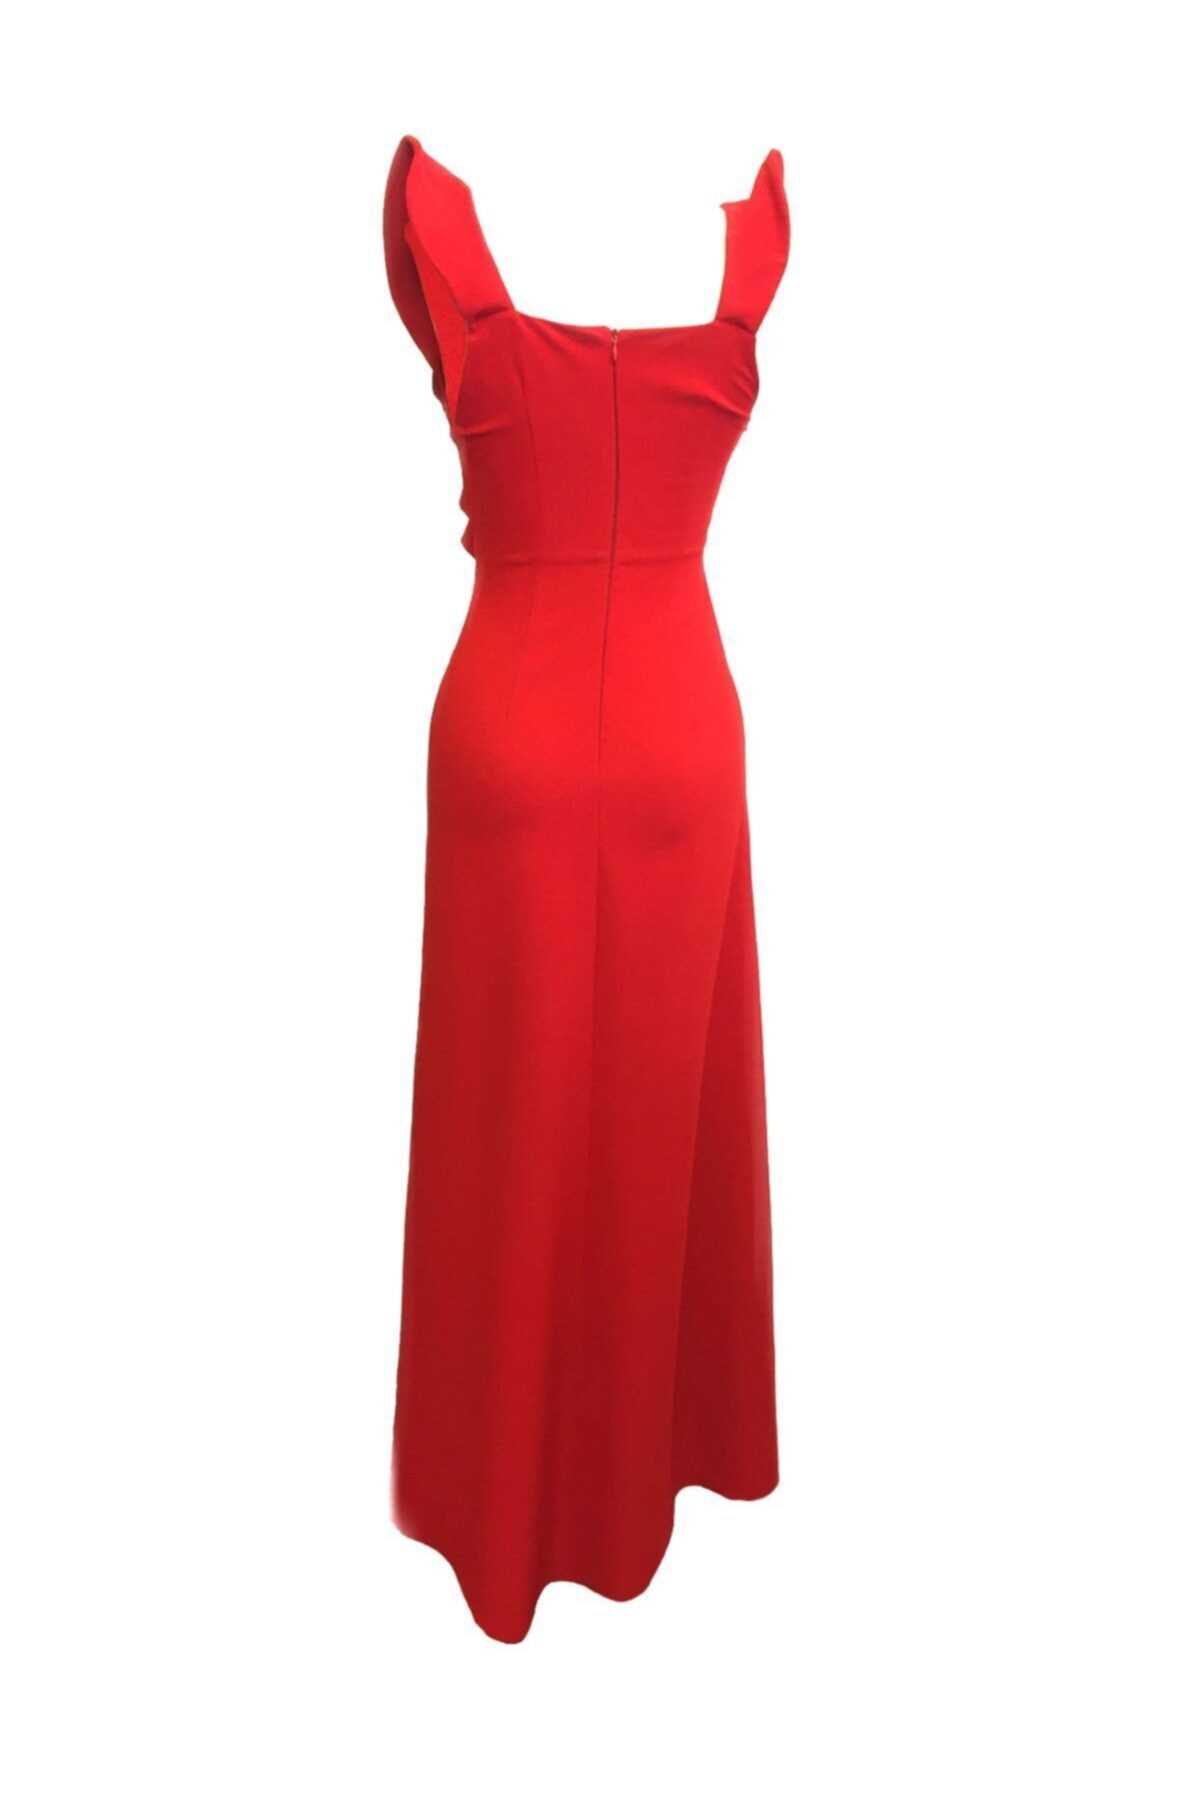 لباس مجلسی خاص زنانه برند Tuğçe Saray رنگ قرمز ty41187976